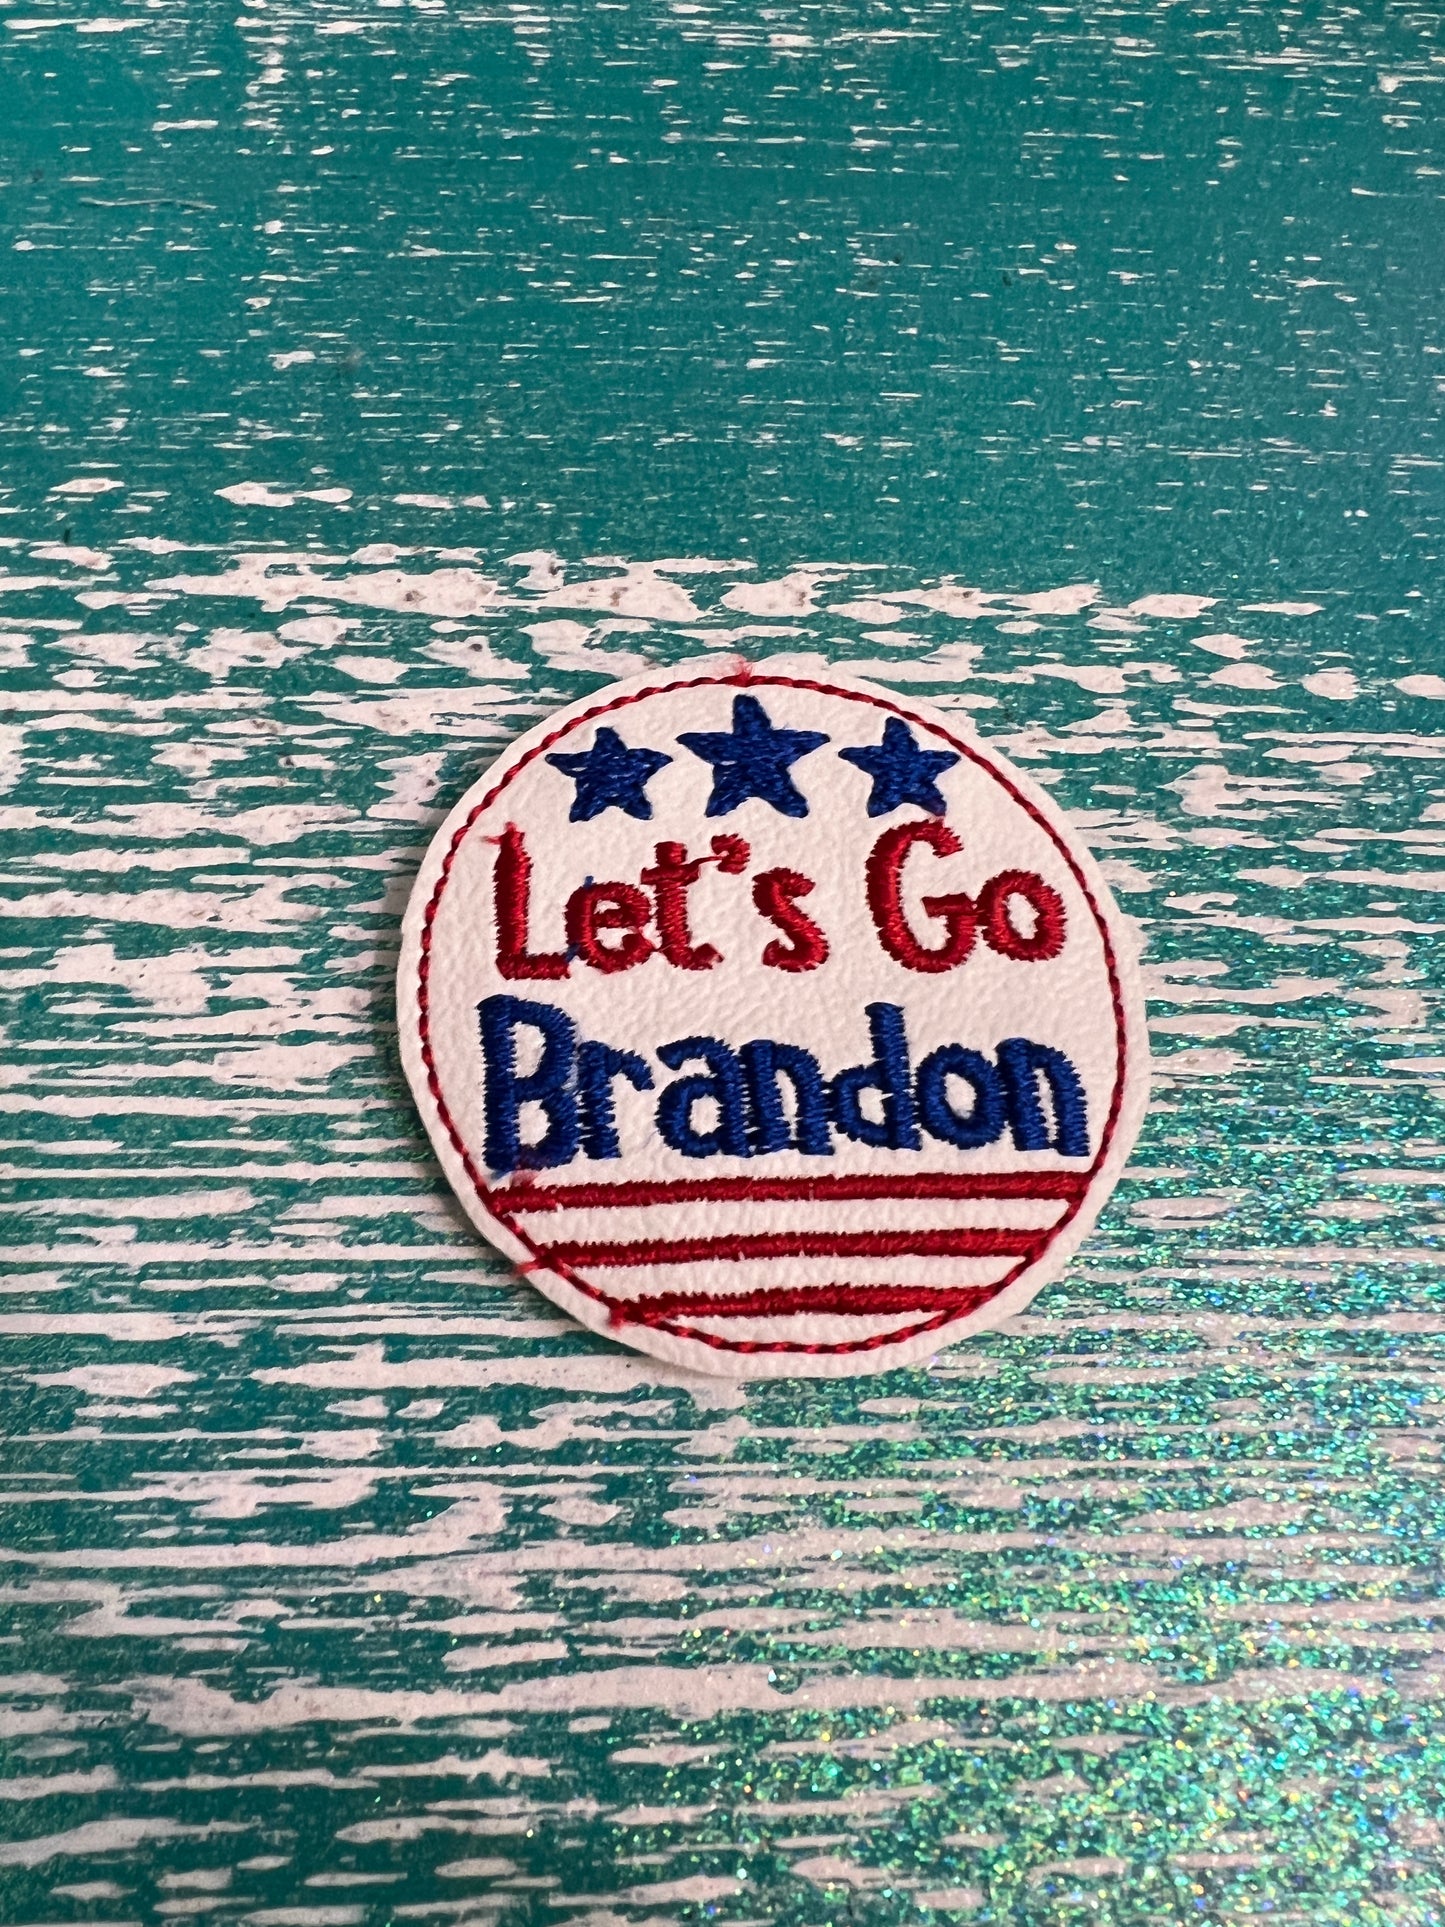 Let’s go Brandon